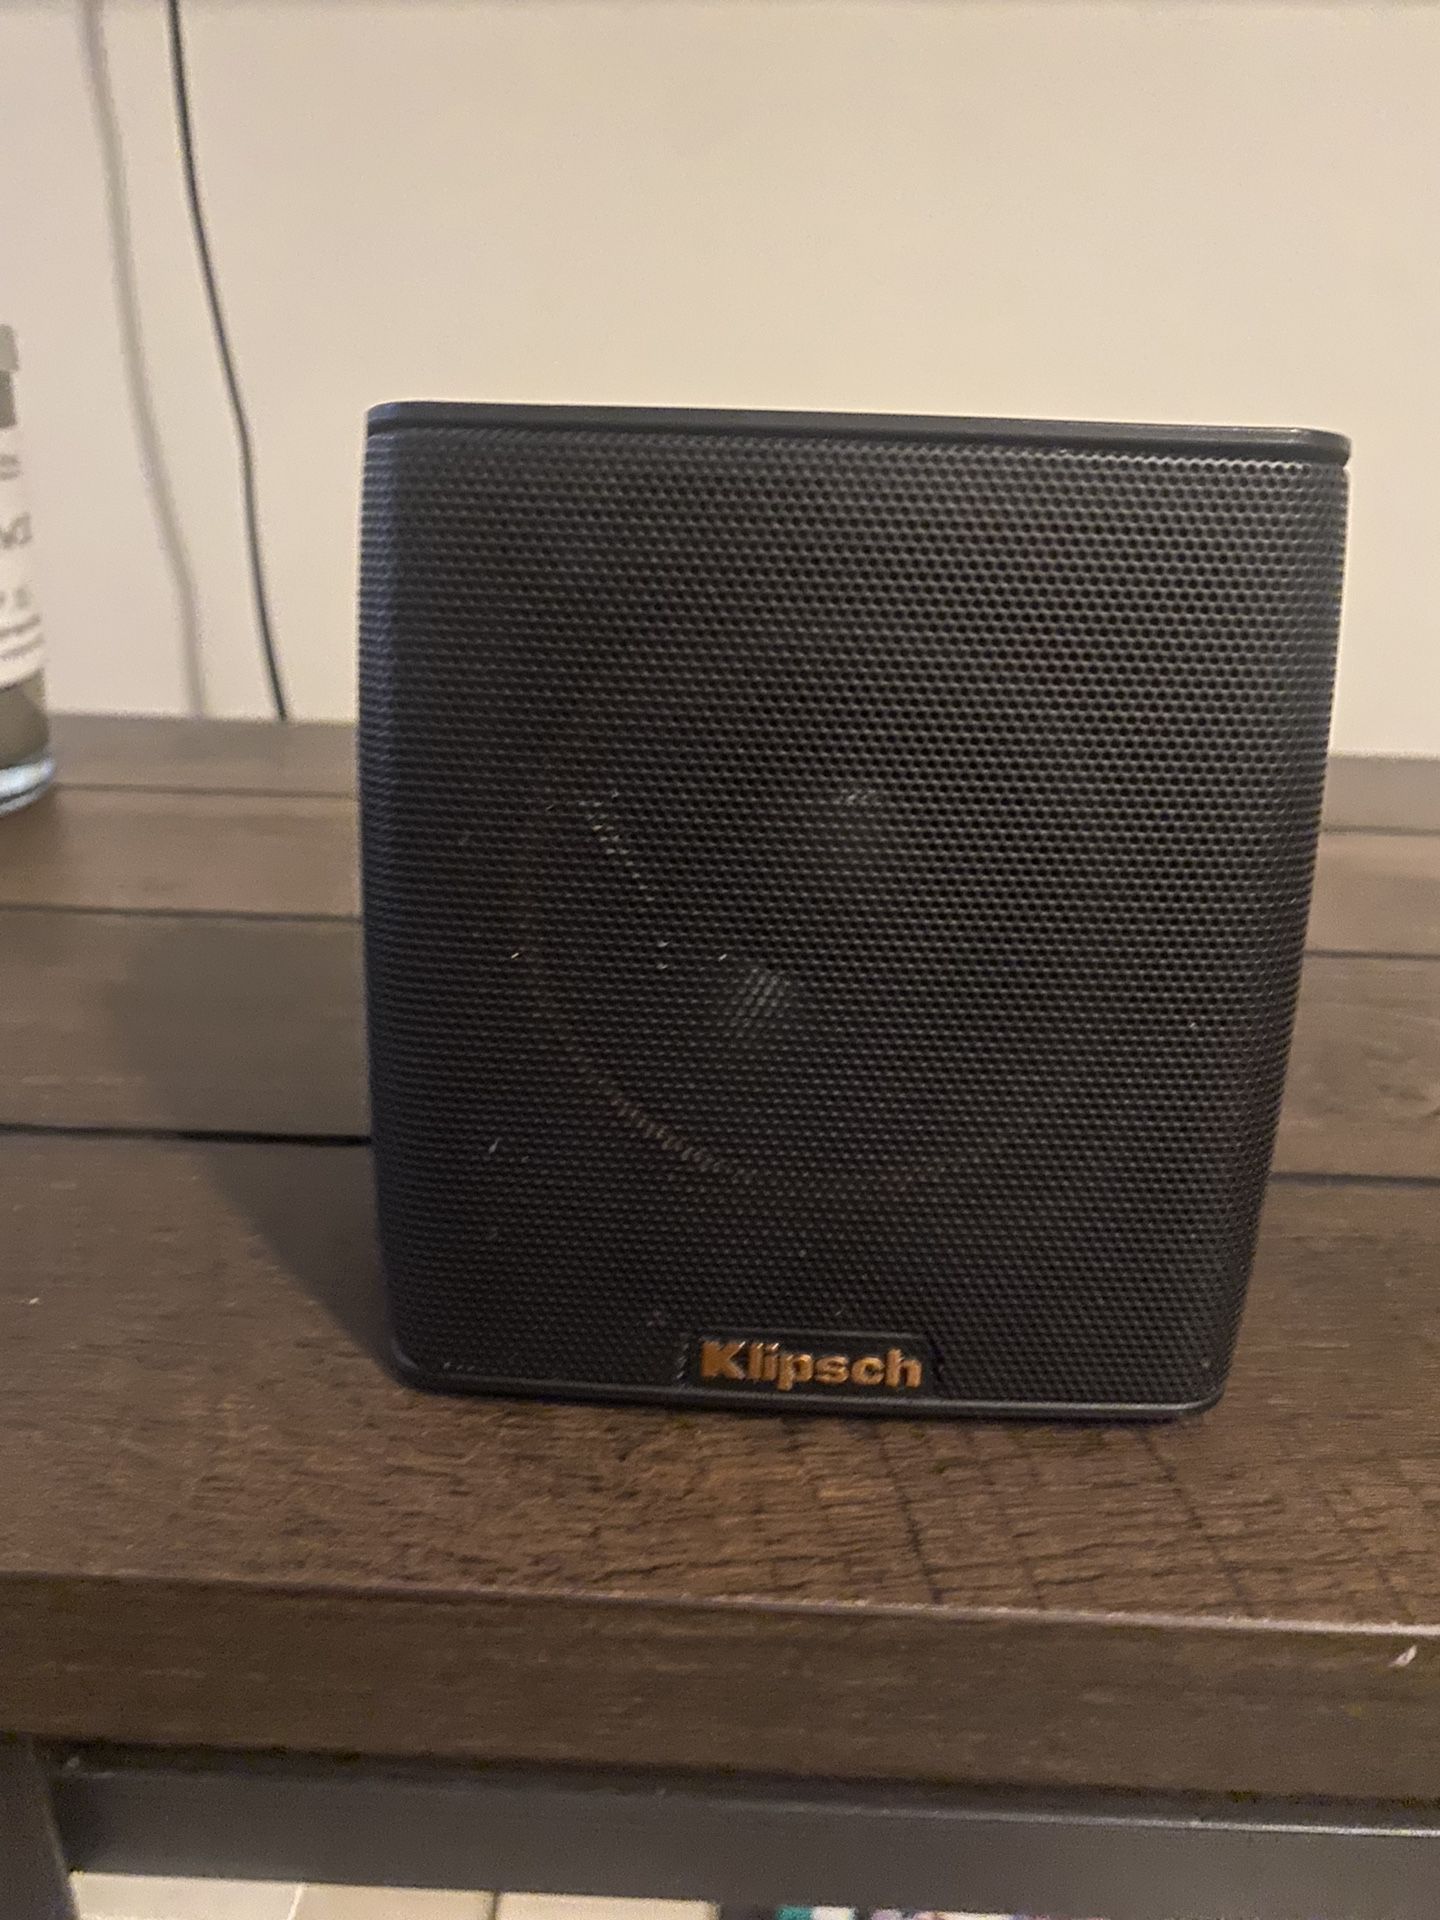 Klipsch Groove Bluetooth Speaker